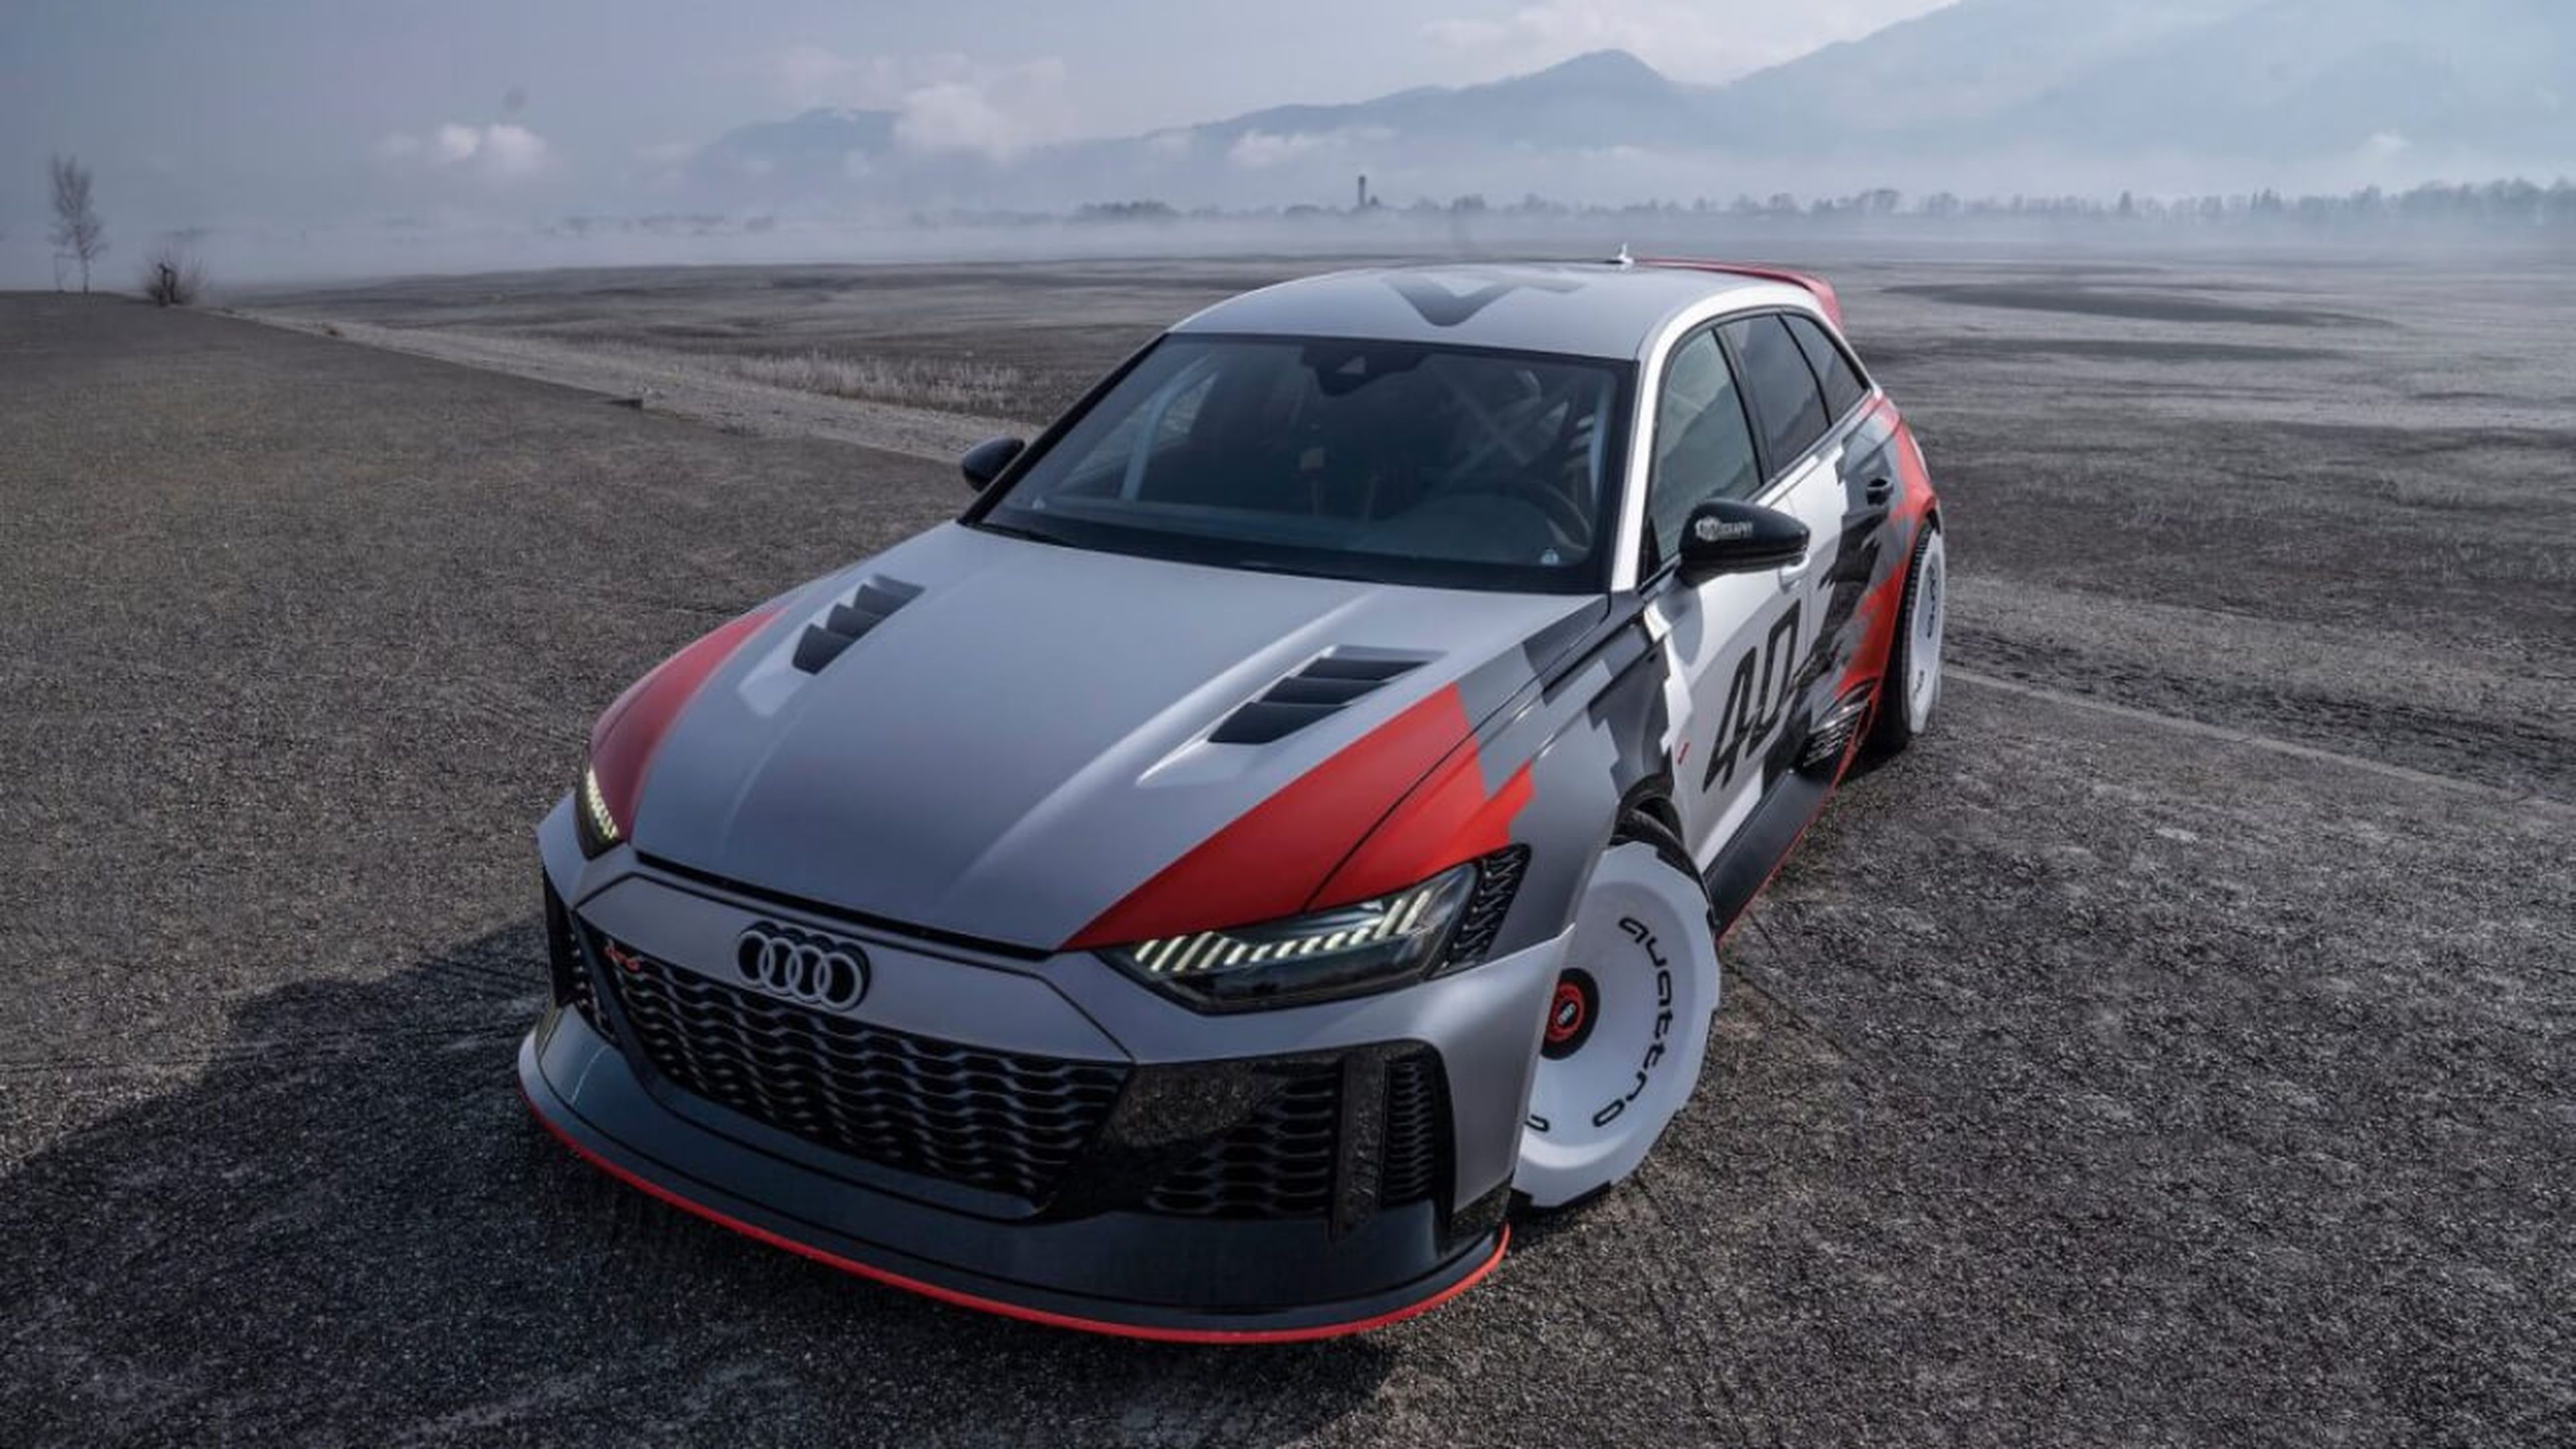 VÍDEO: así ruge el Audi RS6 GTO y no, no es un videojuego